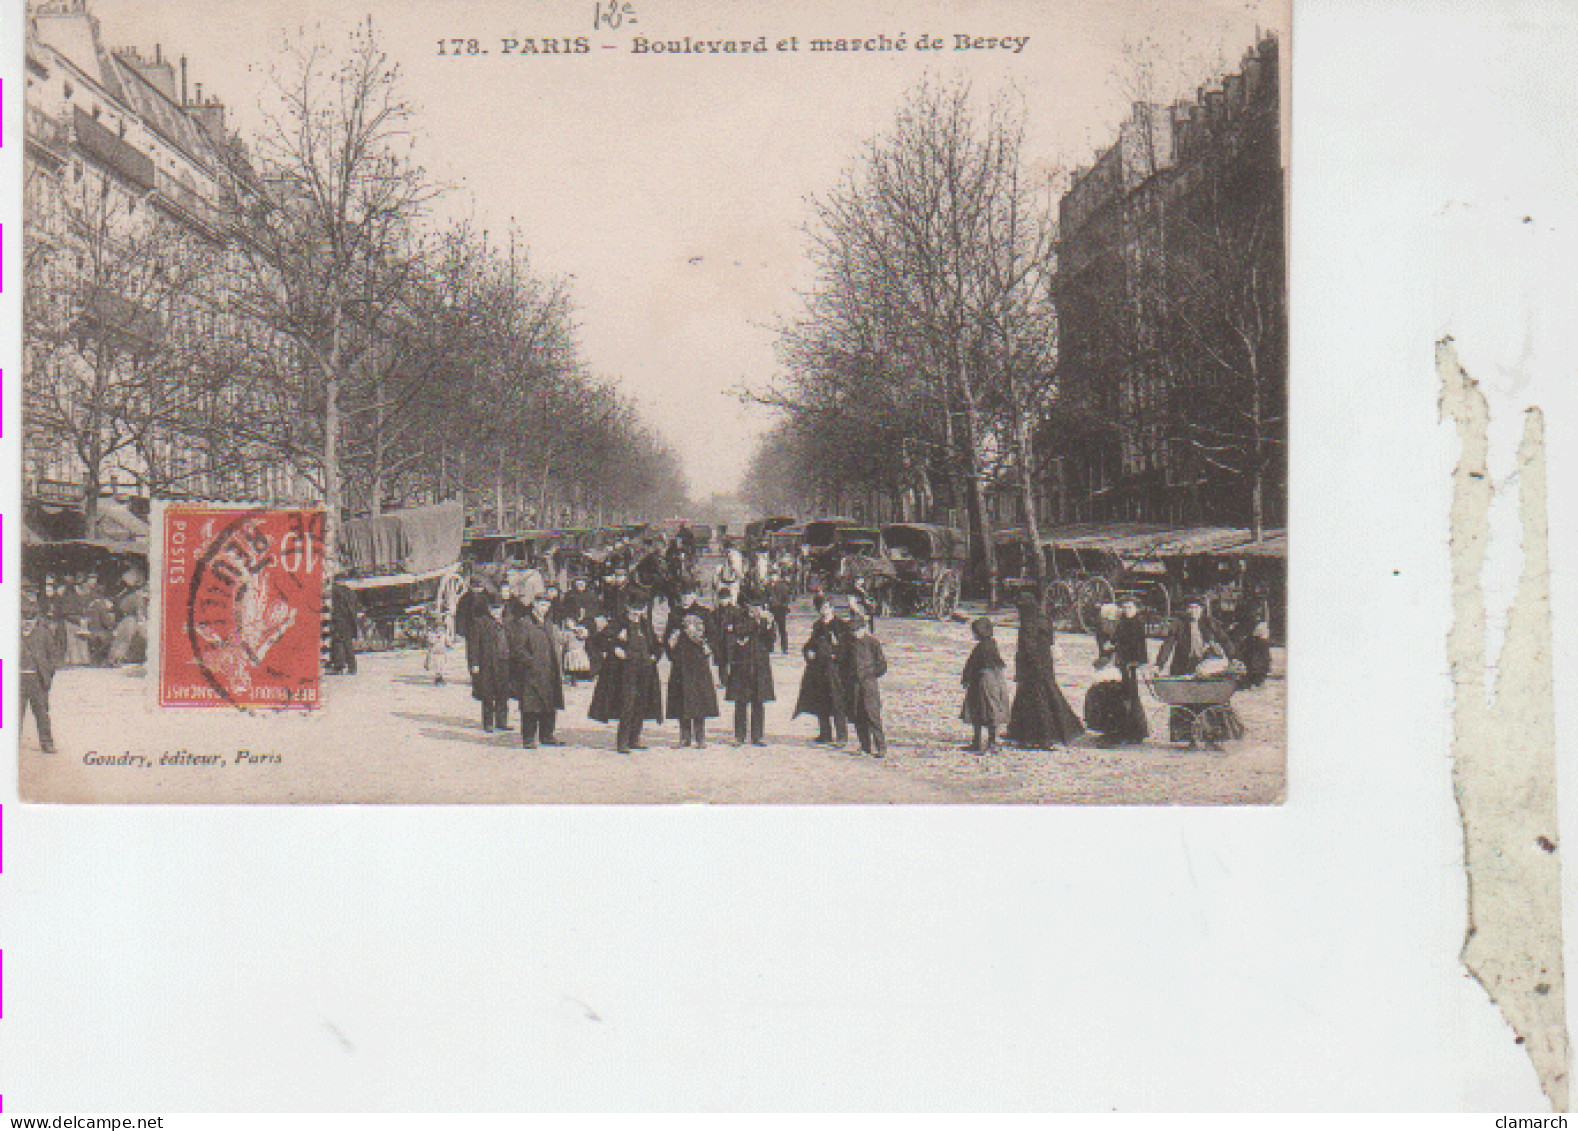 PARIS 12è-Boulevard Et Marché De Bercy - 178 - District 12